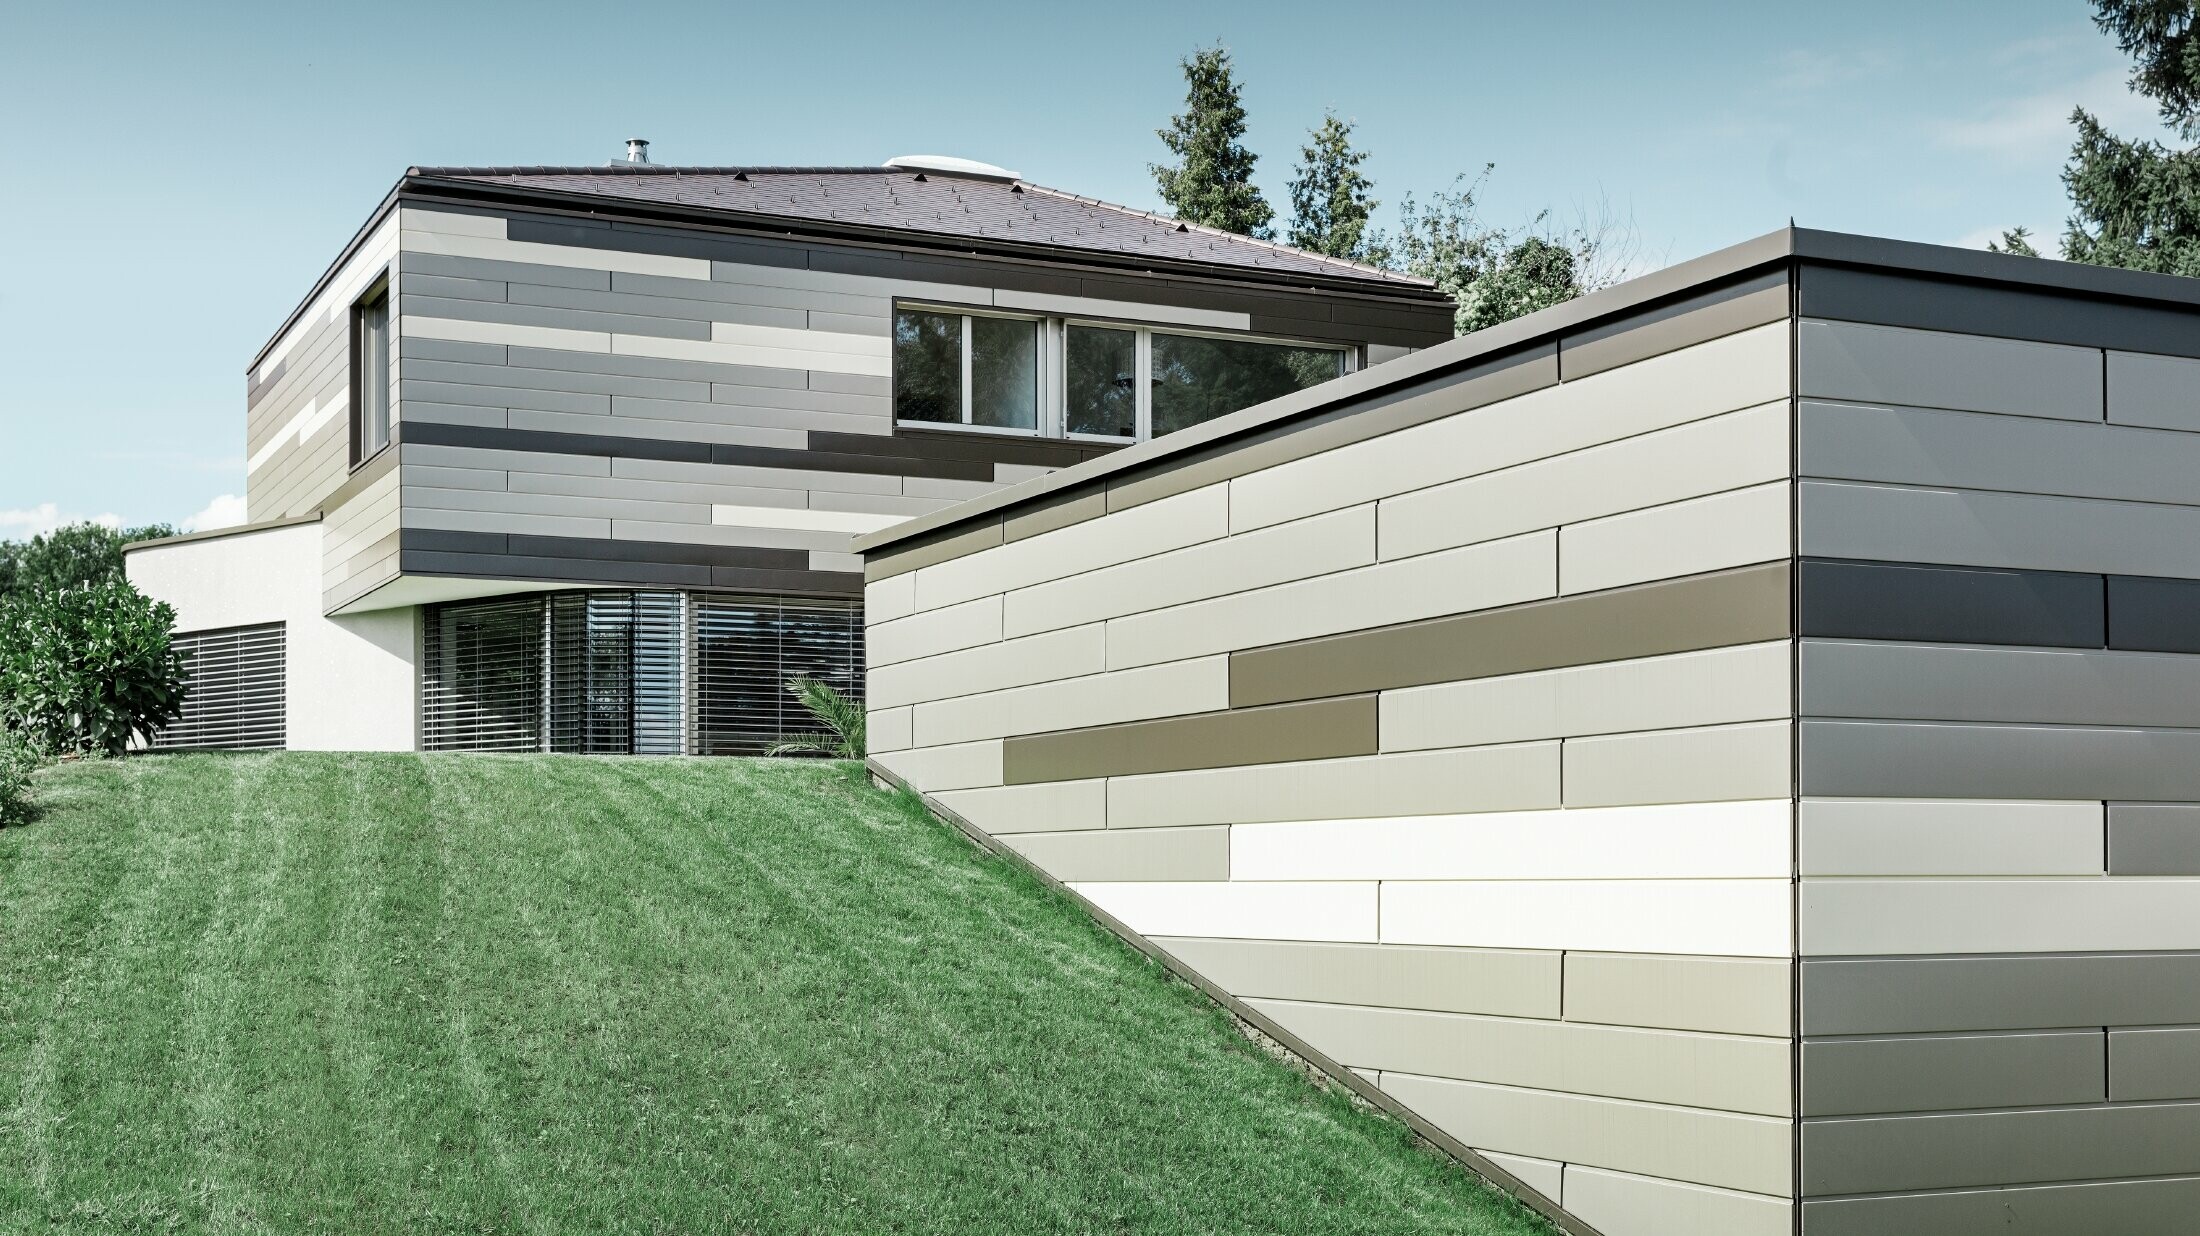 Moderný rodinný dom s plochou strechou a krytou terasou s individuálne navrhnutou hliníkovou fasádou PREFA vo farbách hnedá, bronzová a slonová kosť